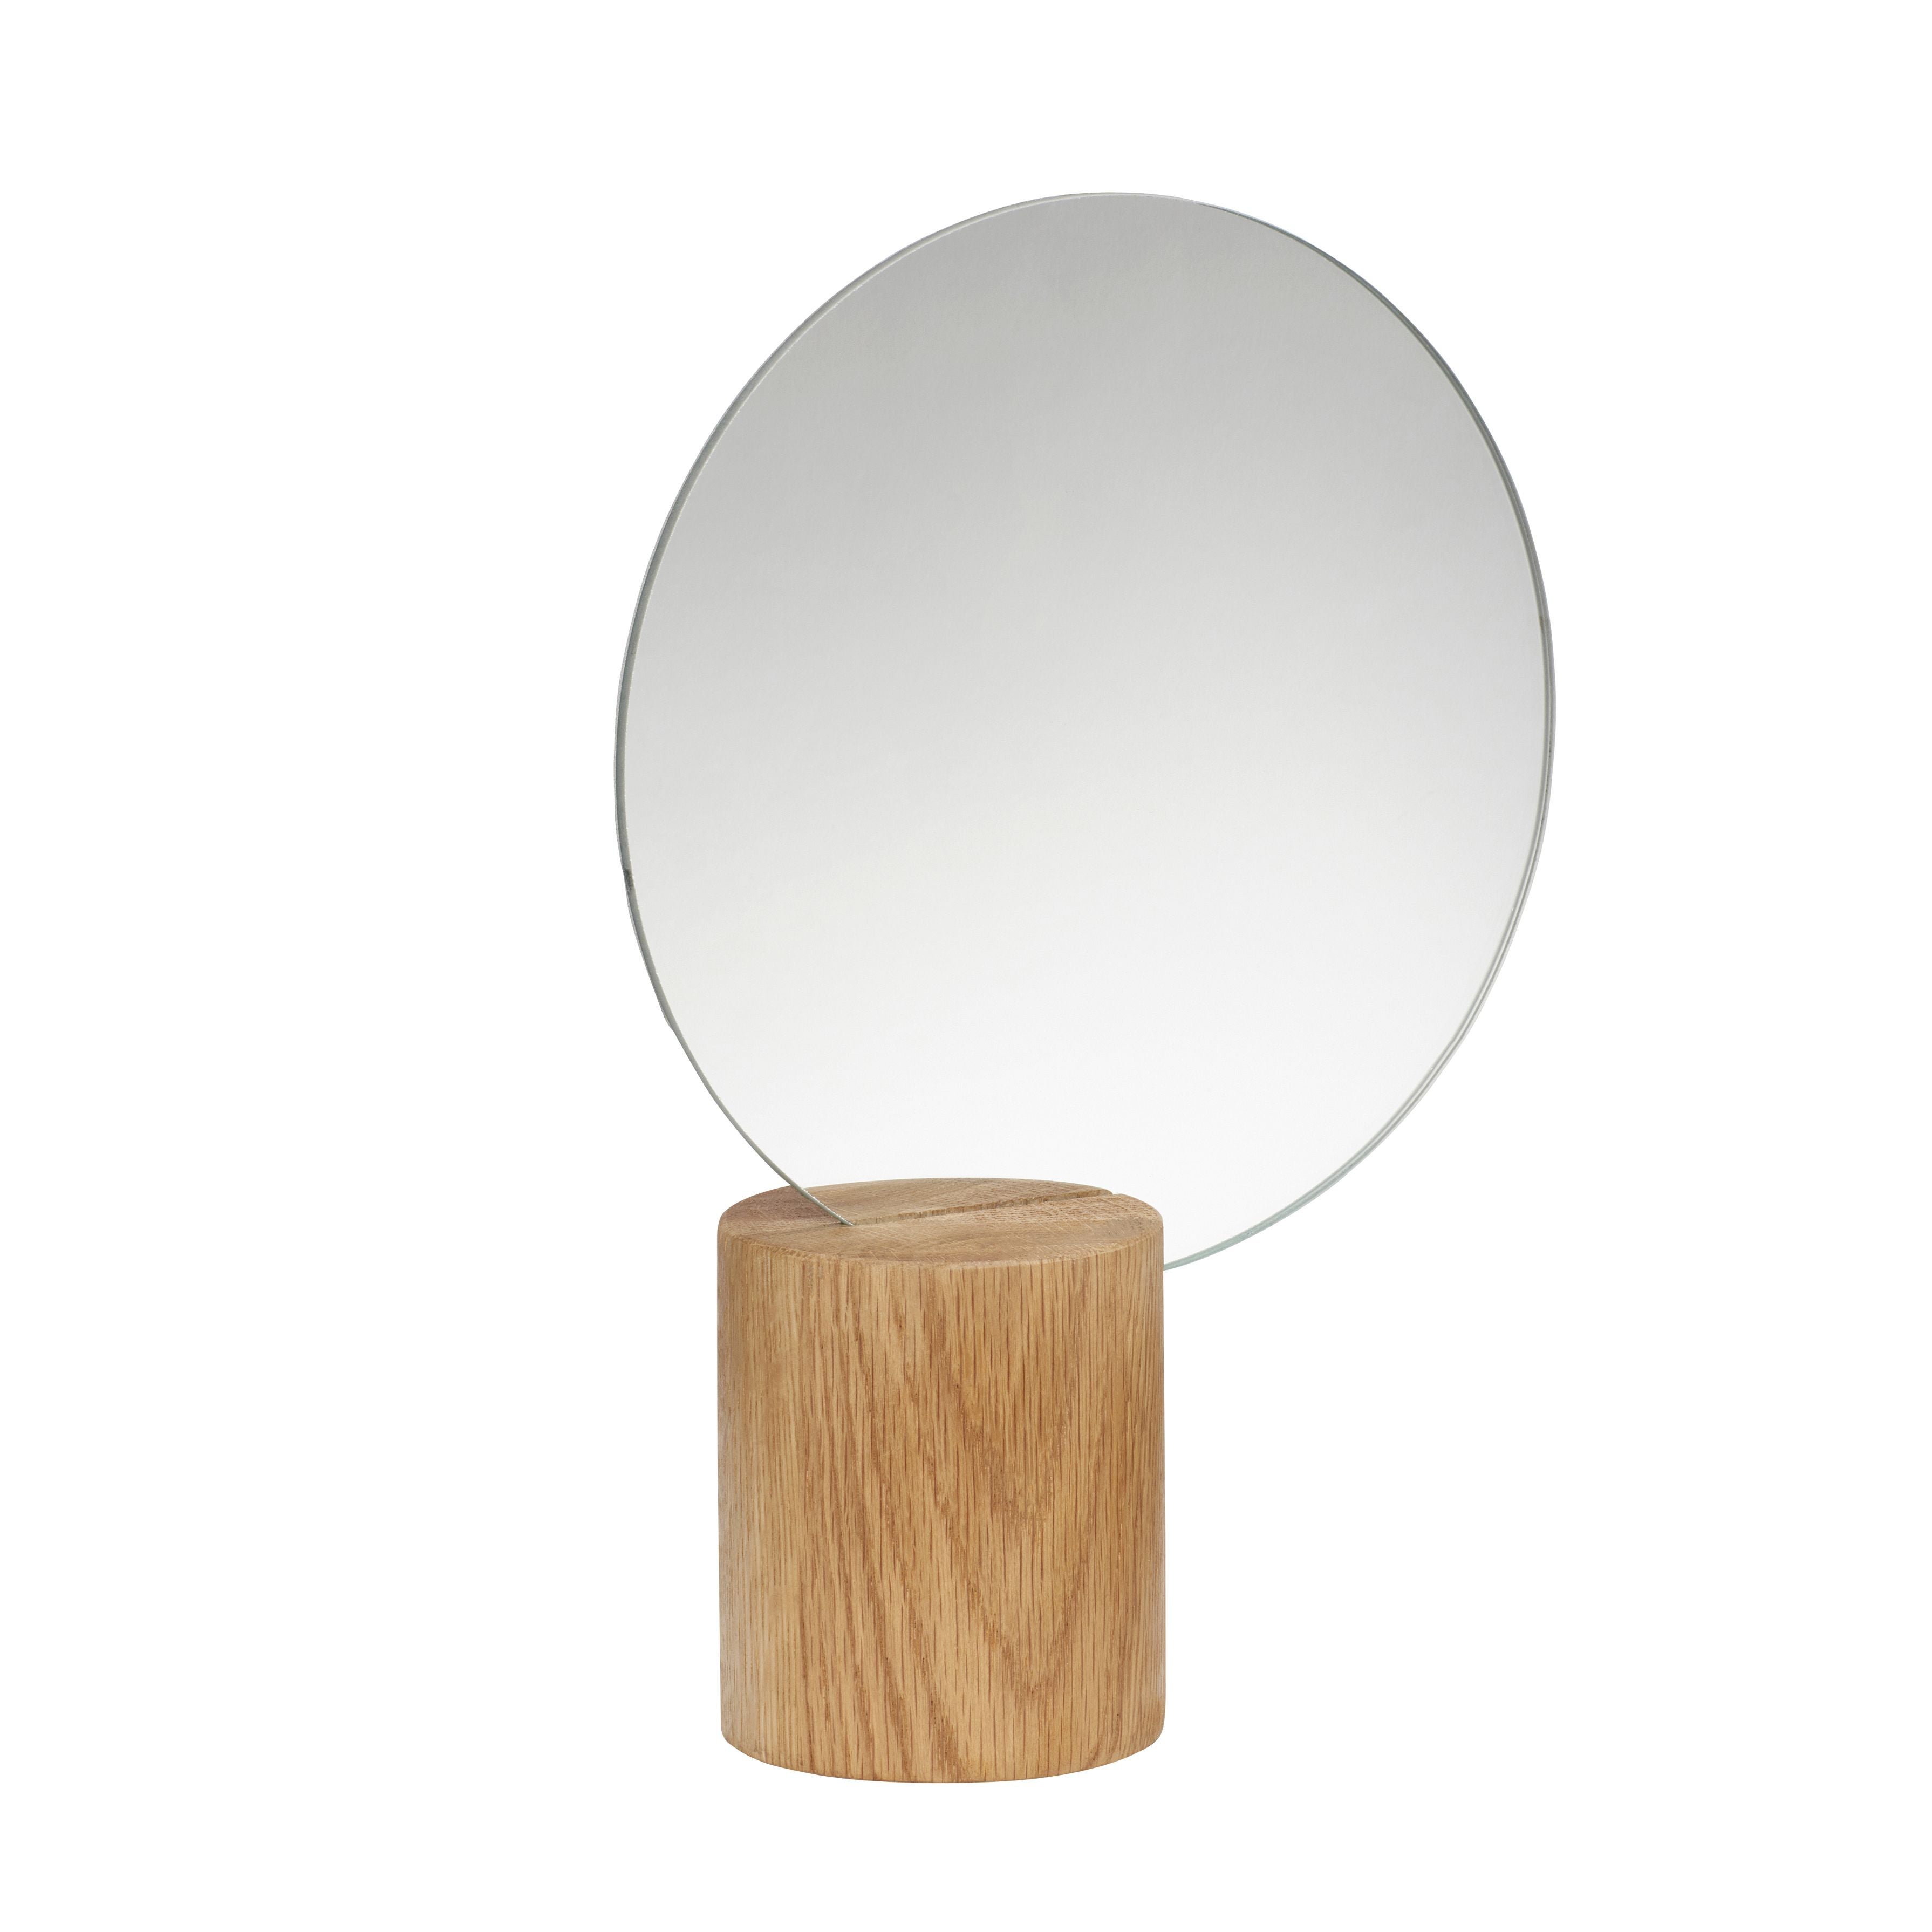 Hübsch Edge Table Mirror Wood Round